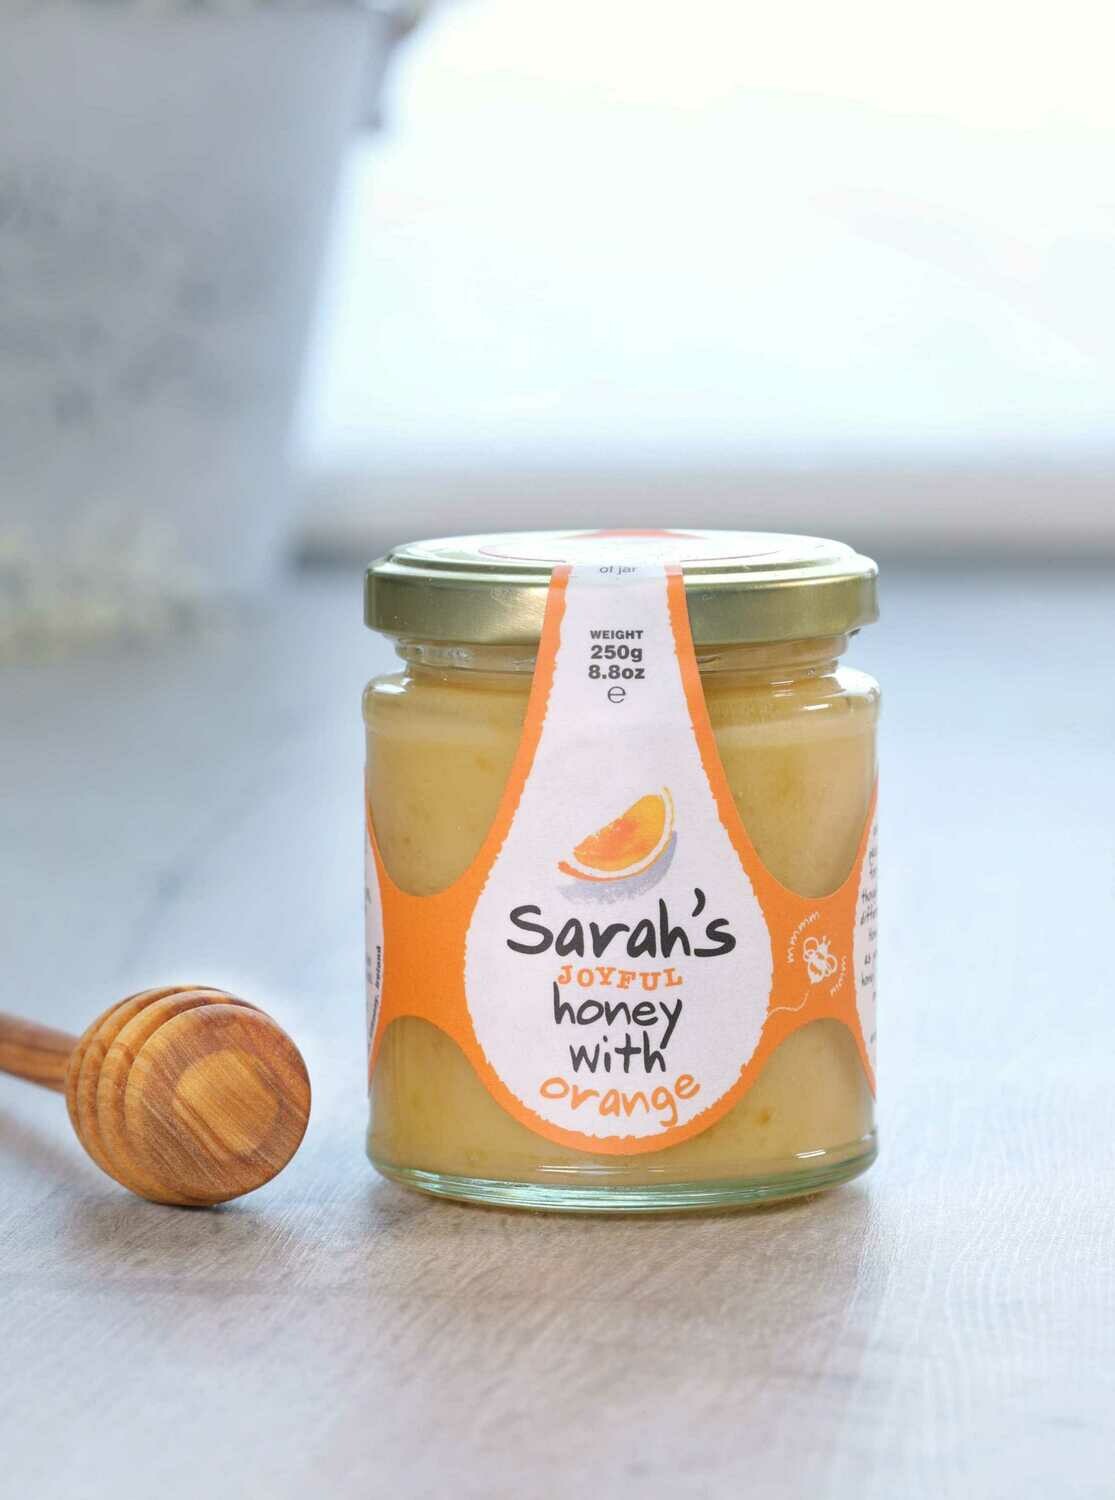 Sarah's Joyful Honey with Orange